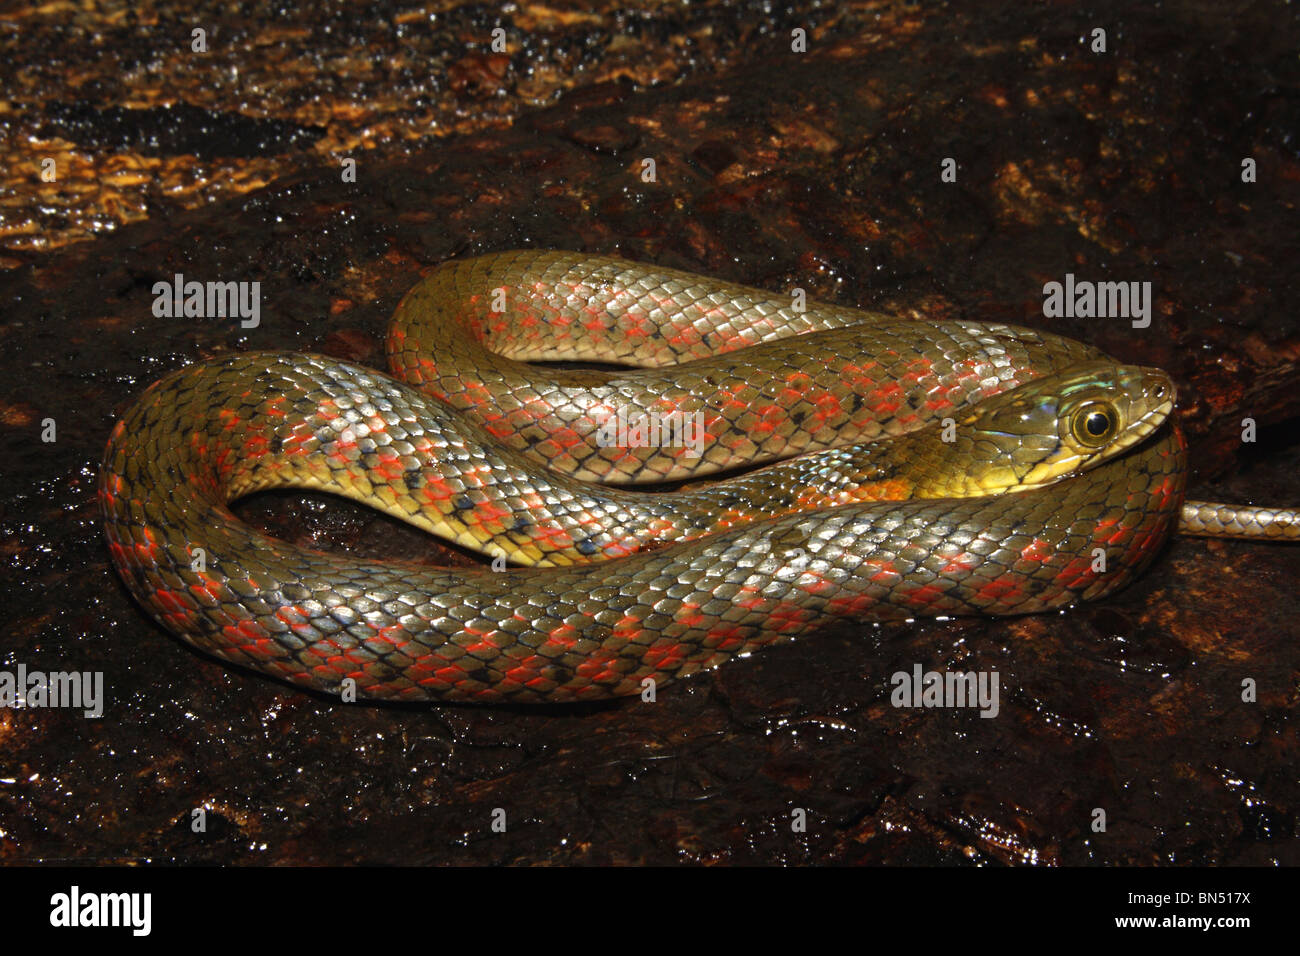 Xenochrophis piscator à carreaux KEELBACK commun non venimeux. L'asiatique serpent d'eau. Motif à damiers sur le corps Banque D'Images